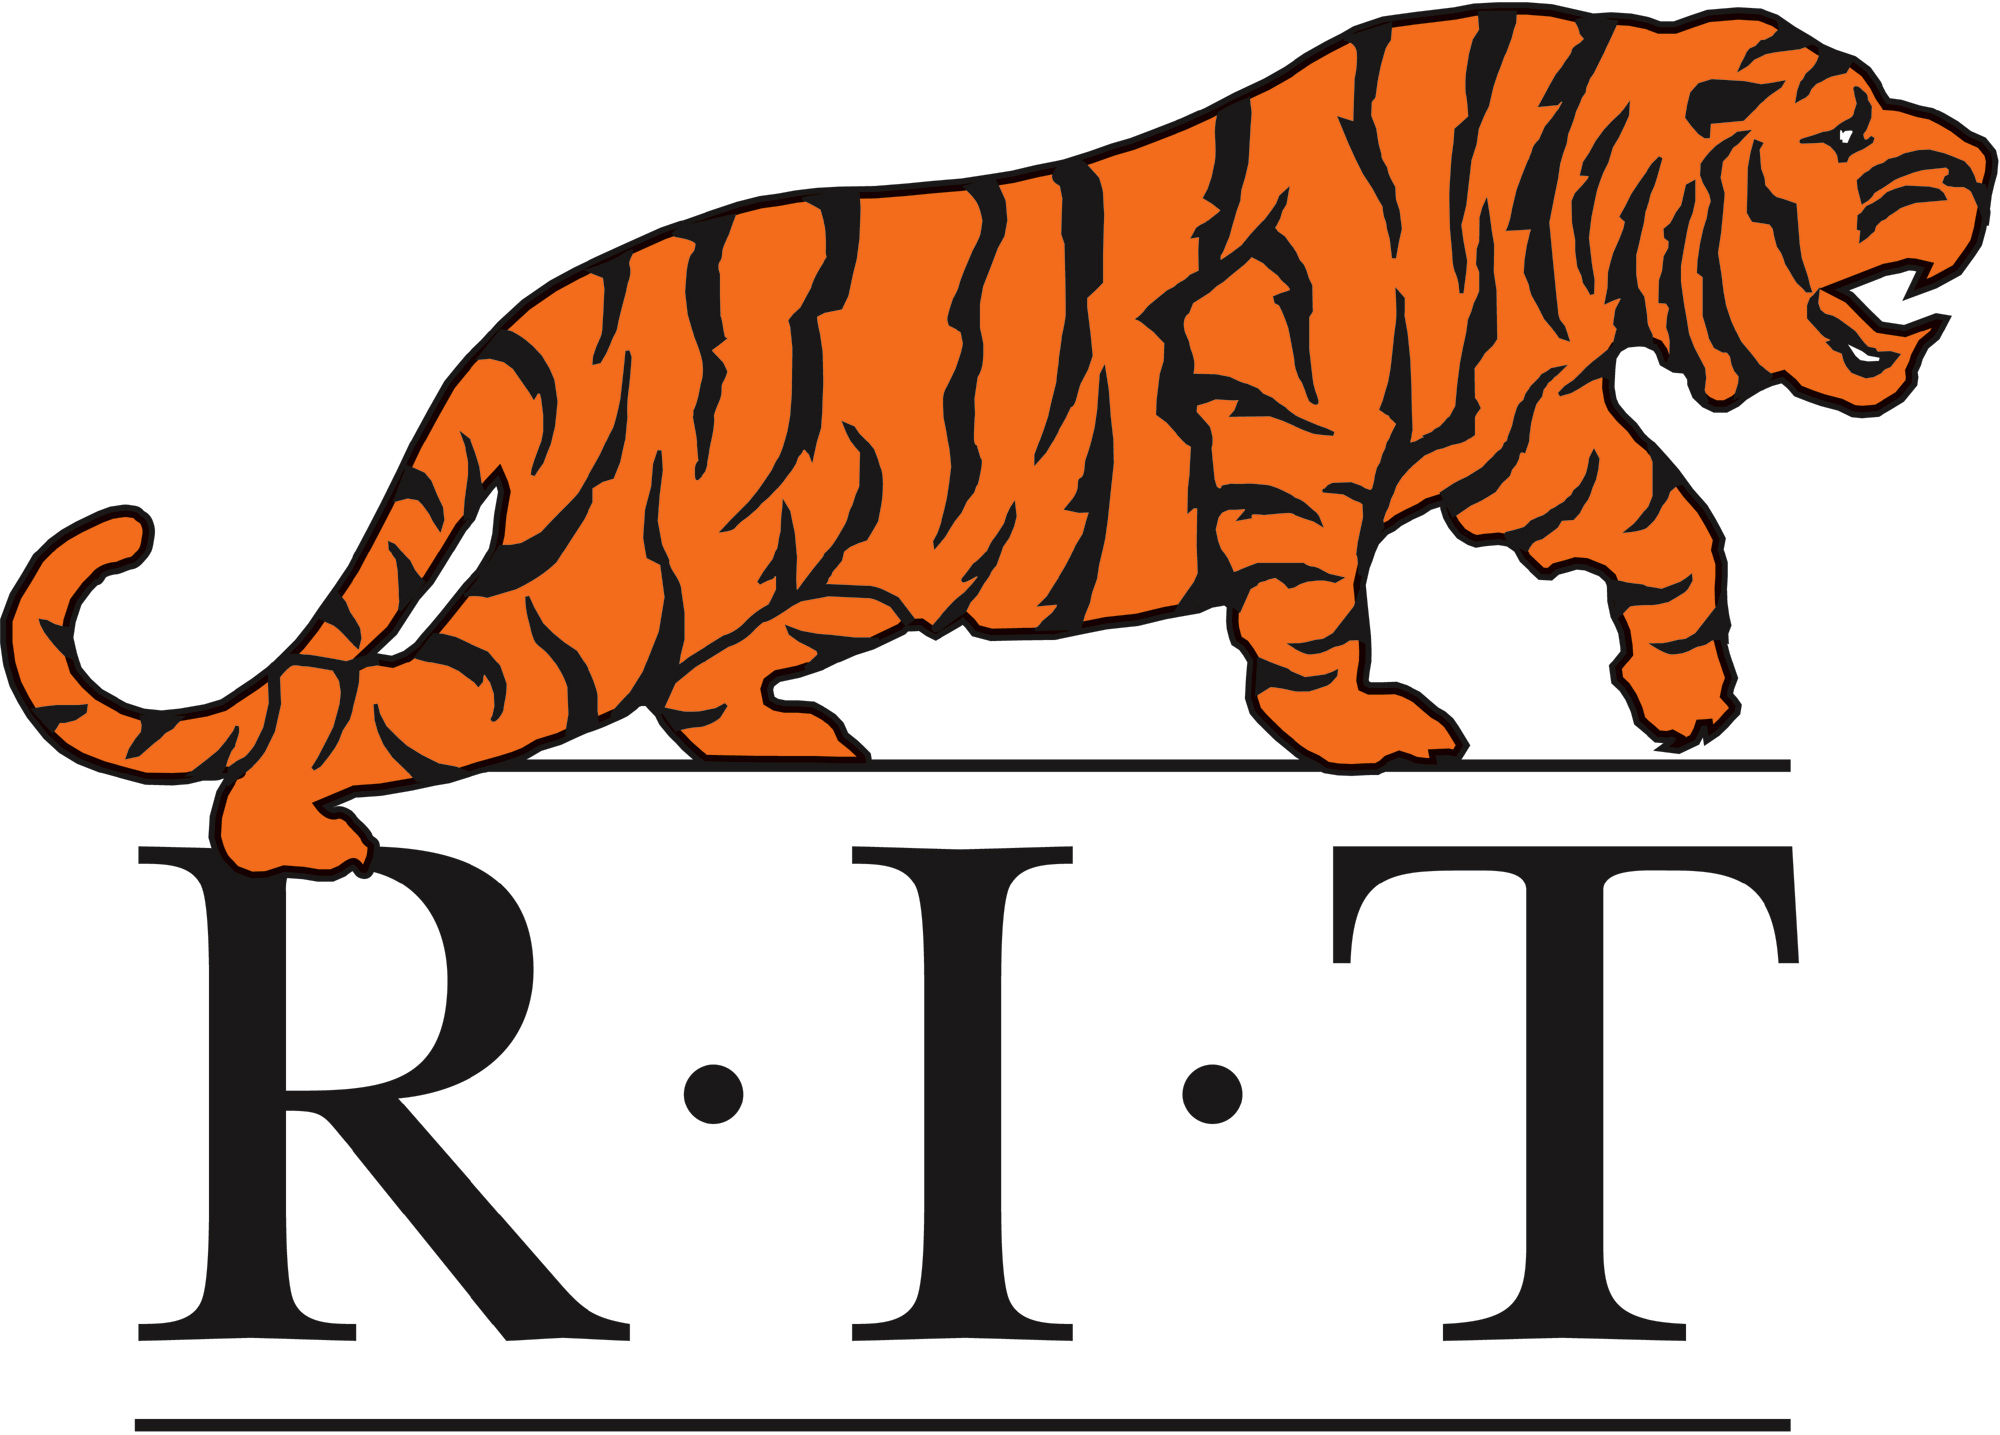 RIT logo